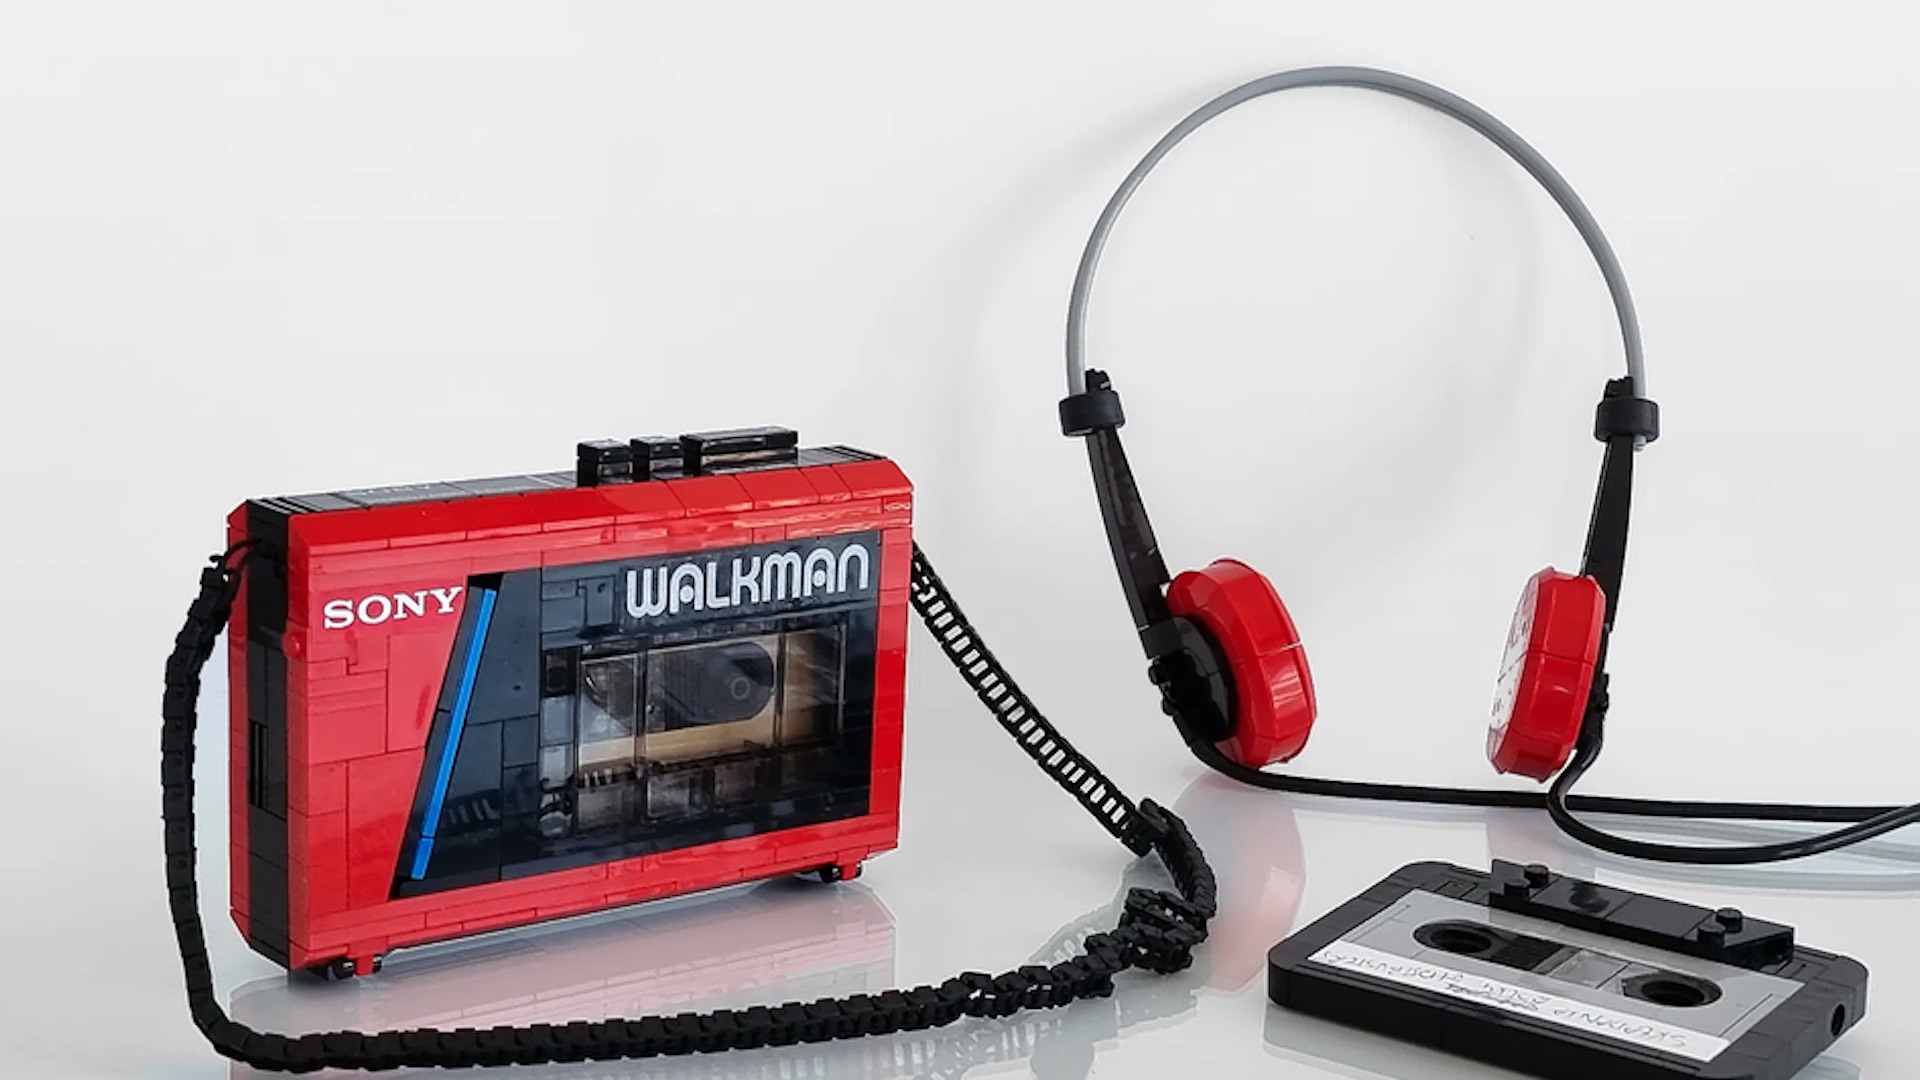 Justo en la nostalgia: Así se ve el Sony Walkman x Lego